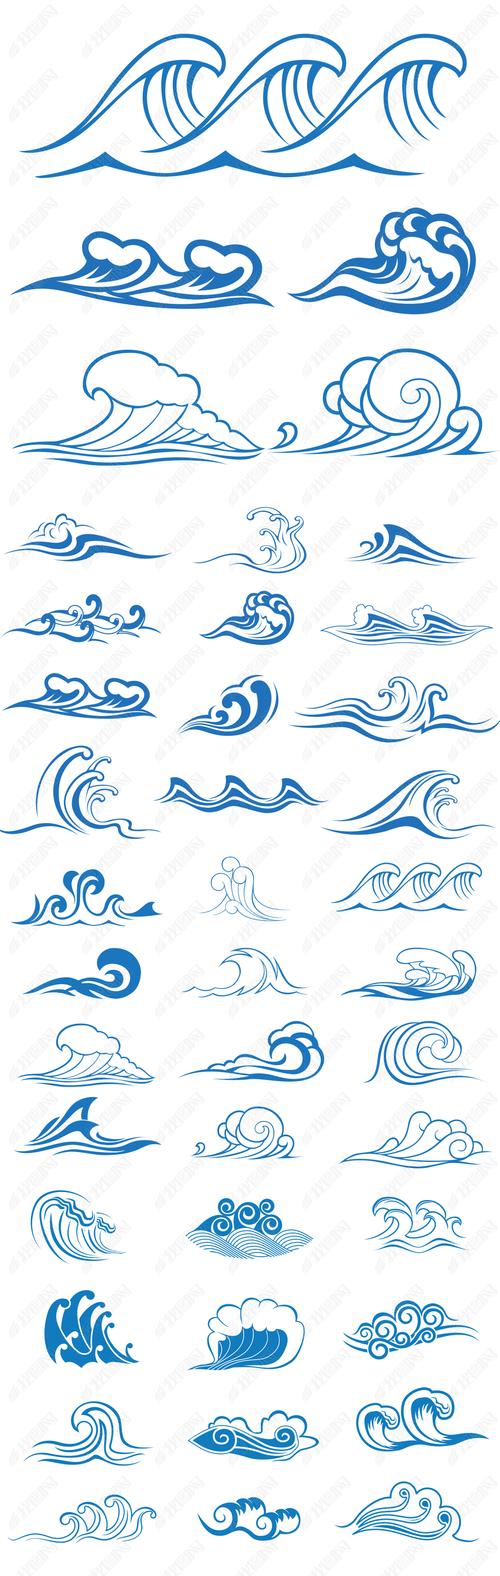 2017蓝色海浪浪花图案纹样矢量素材